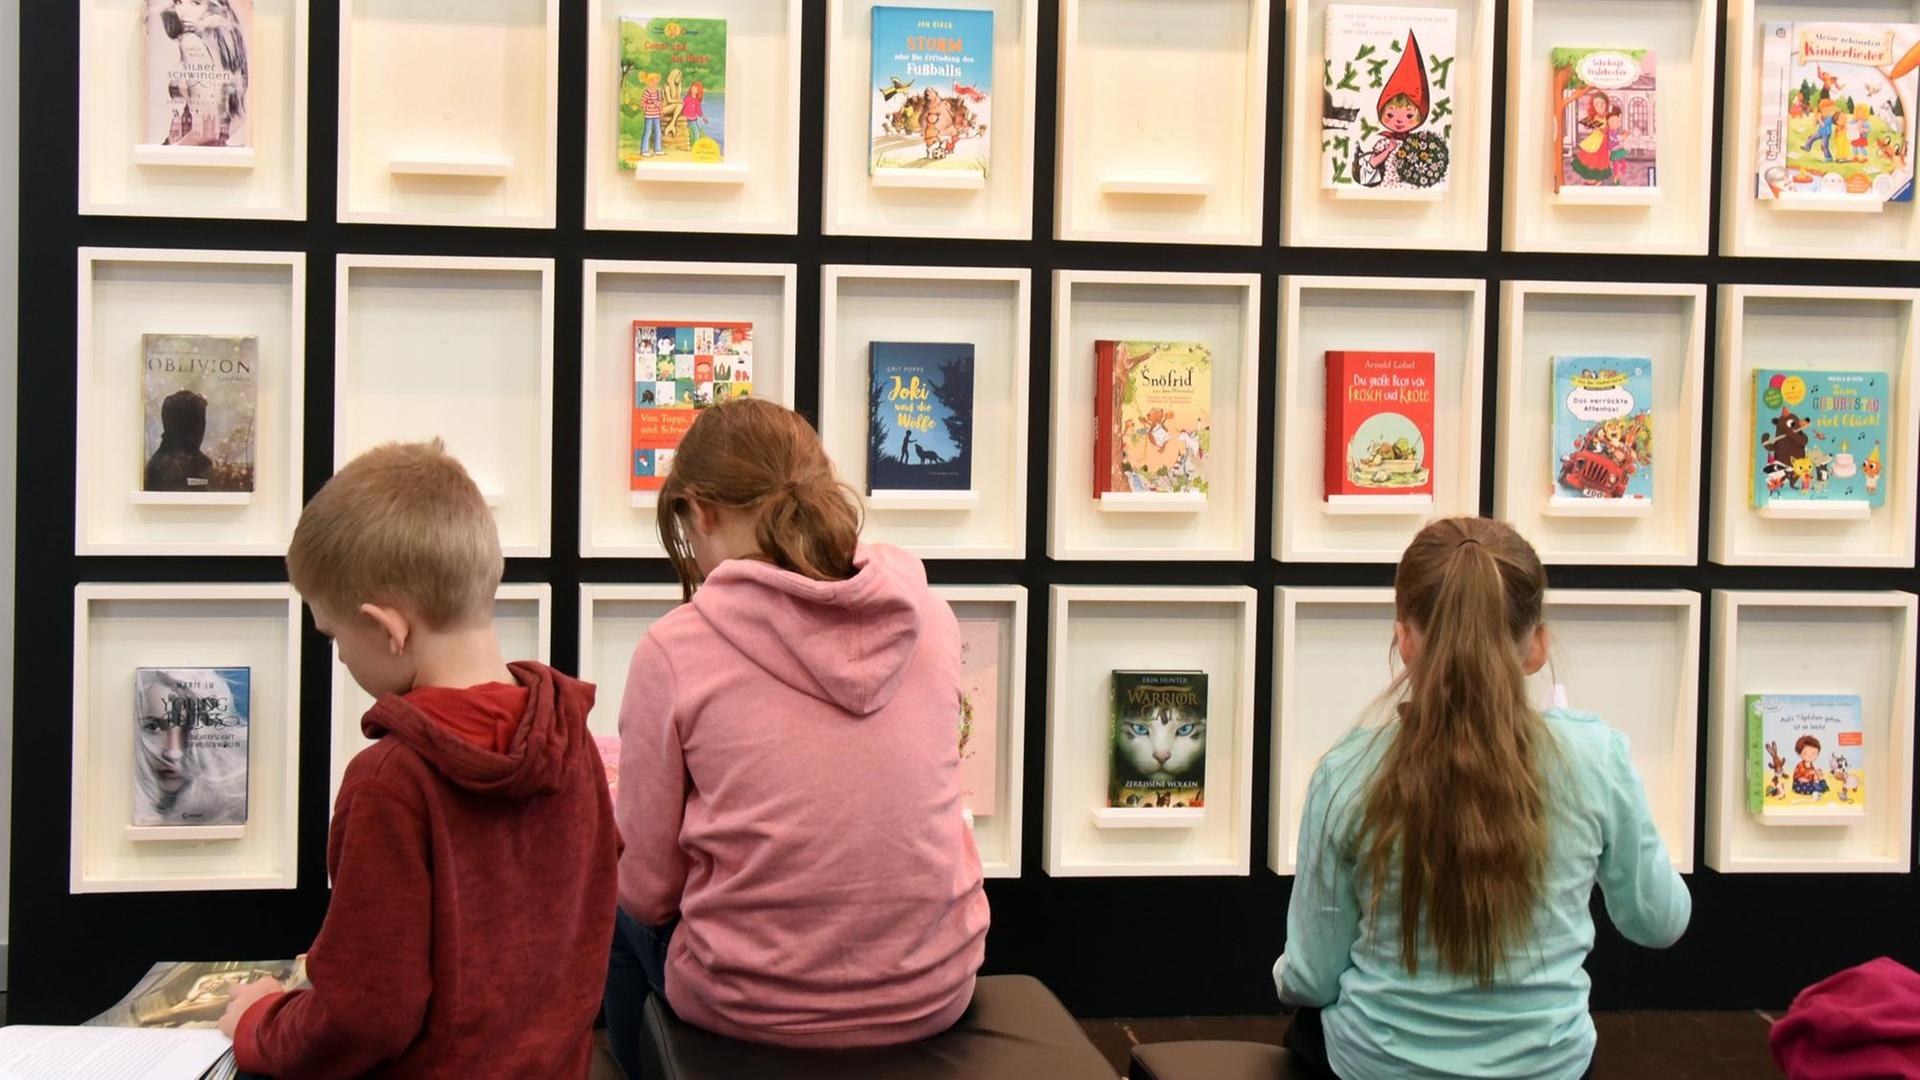 18.03.2018, Sachsen, Leipzig: Kinder lesen in Büchern an einem Stand auf der Leipziger Buchmesse. Foto: Waltraud Grubitzsch/dpa-Zentralbild/ZB